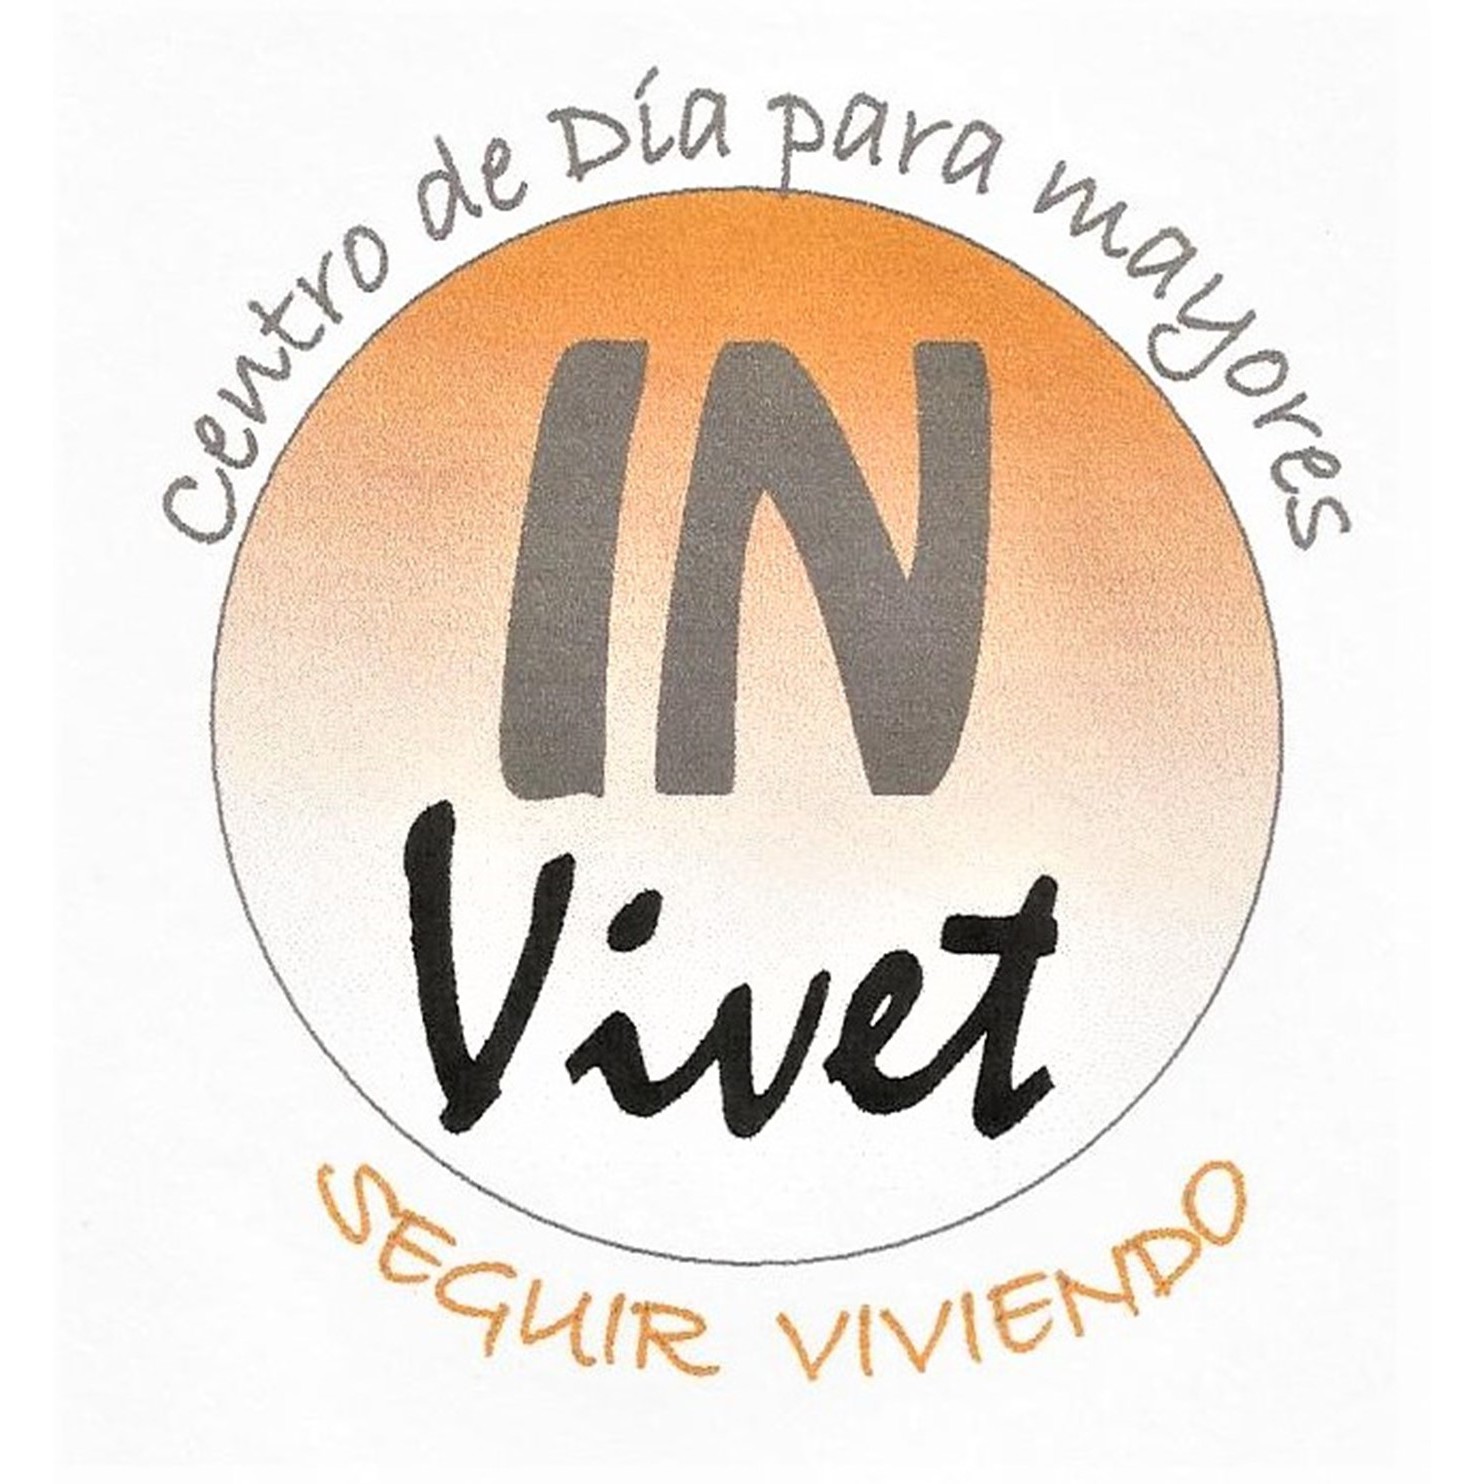 Centro de día para Mayores in Vivet Logo